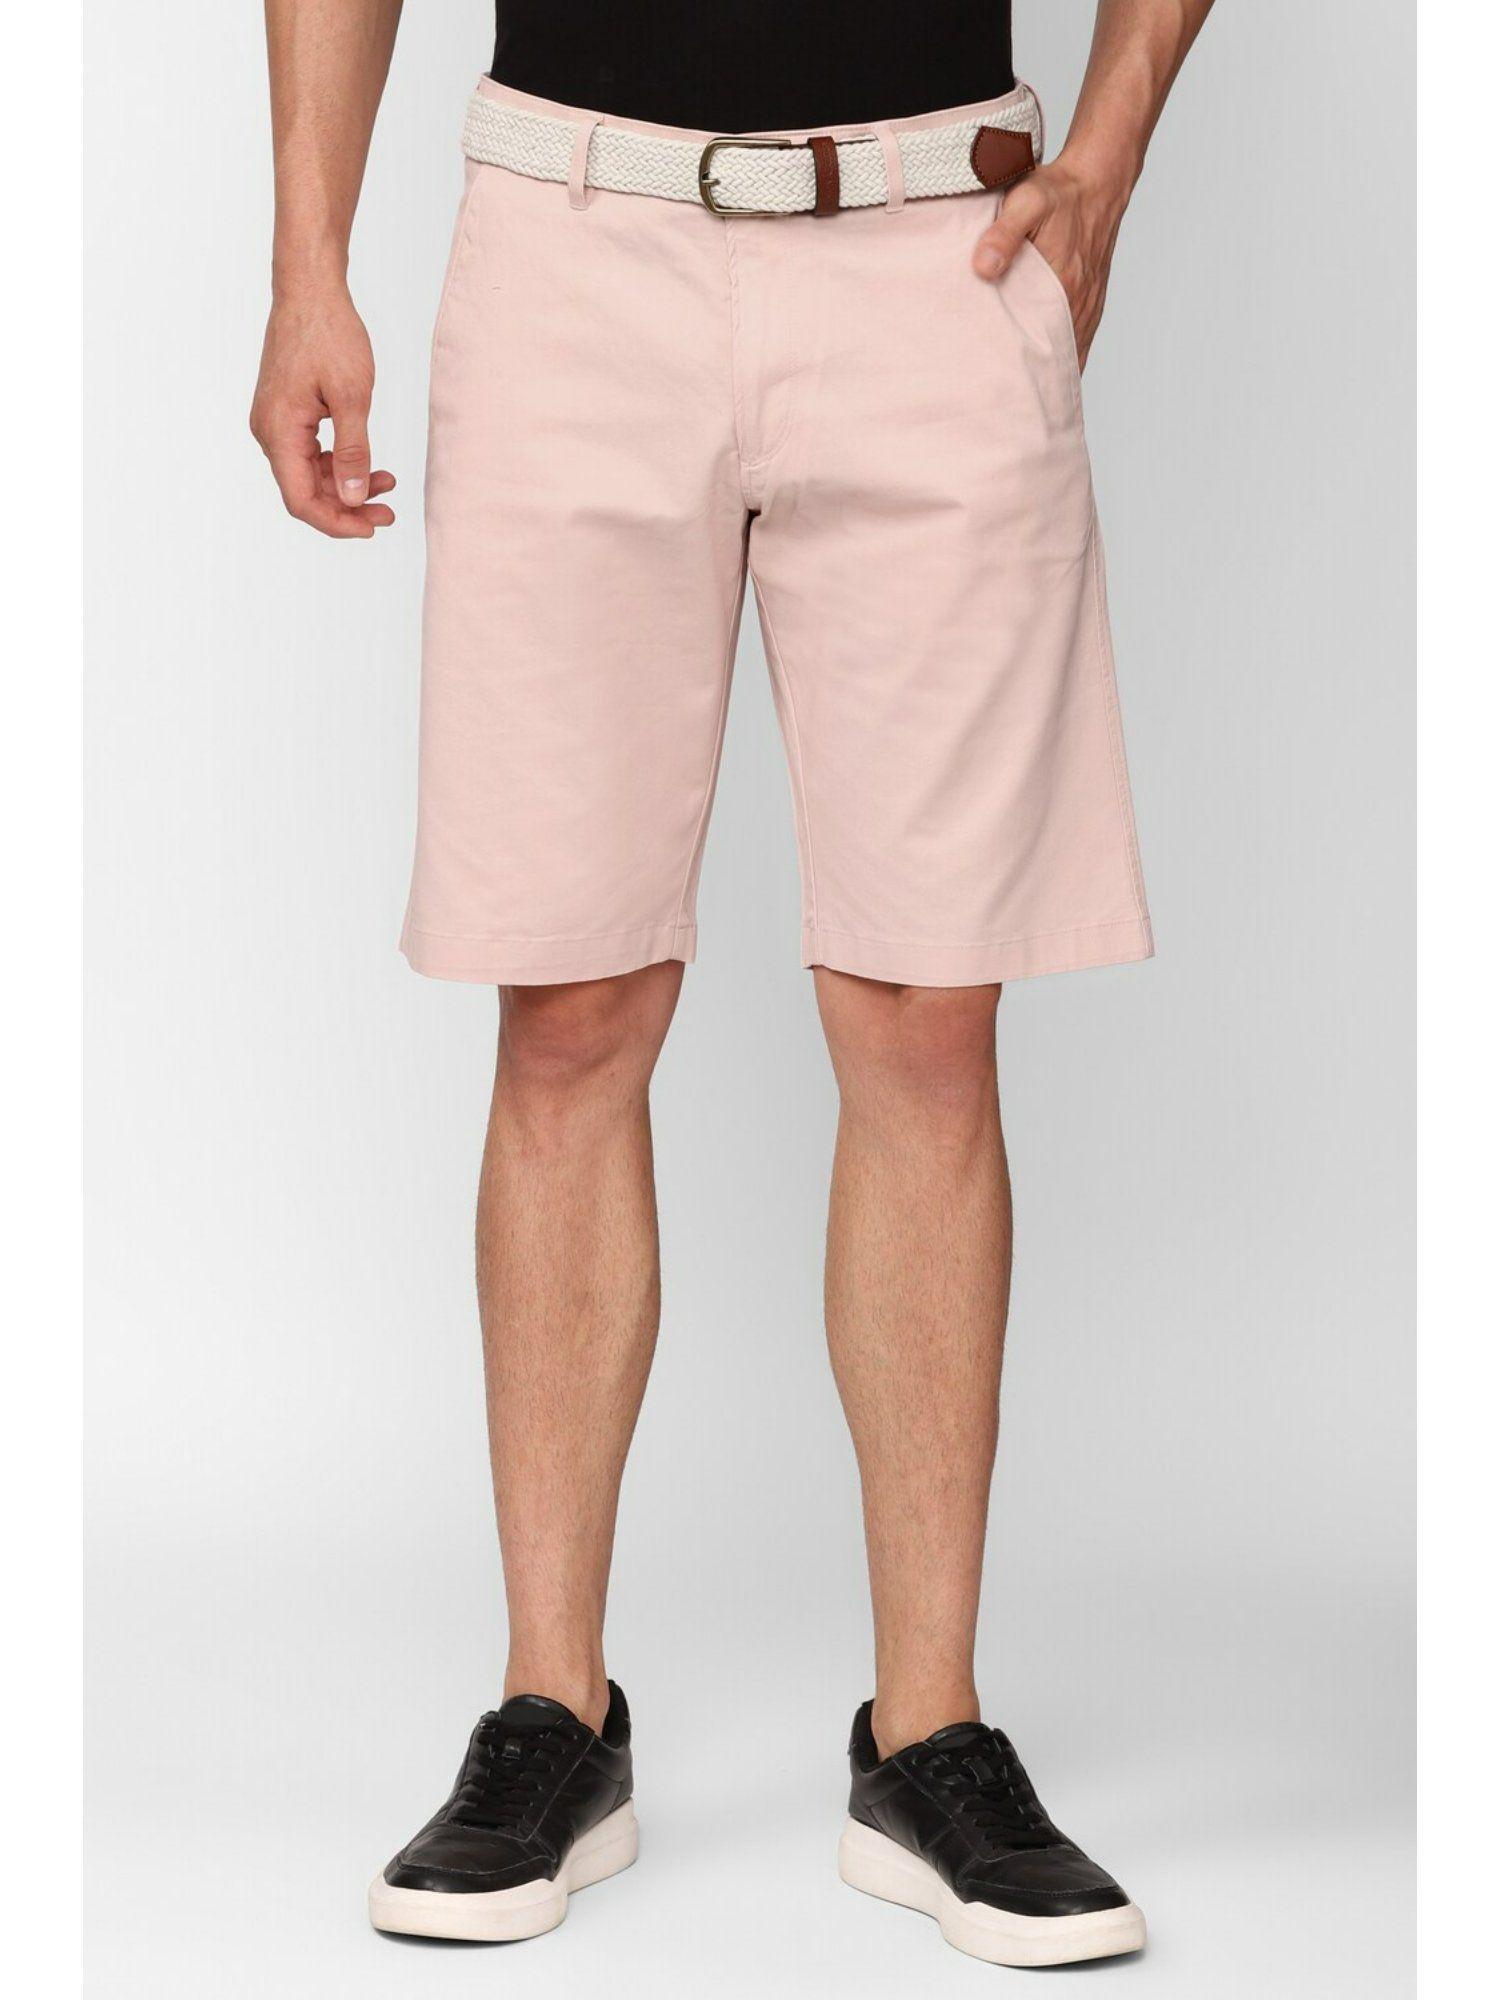 mens pink shorts